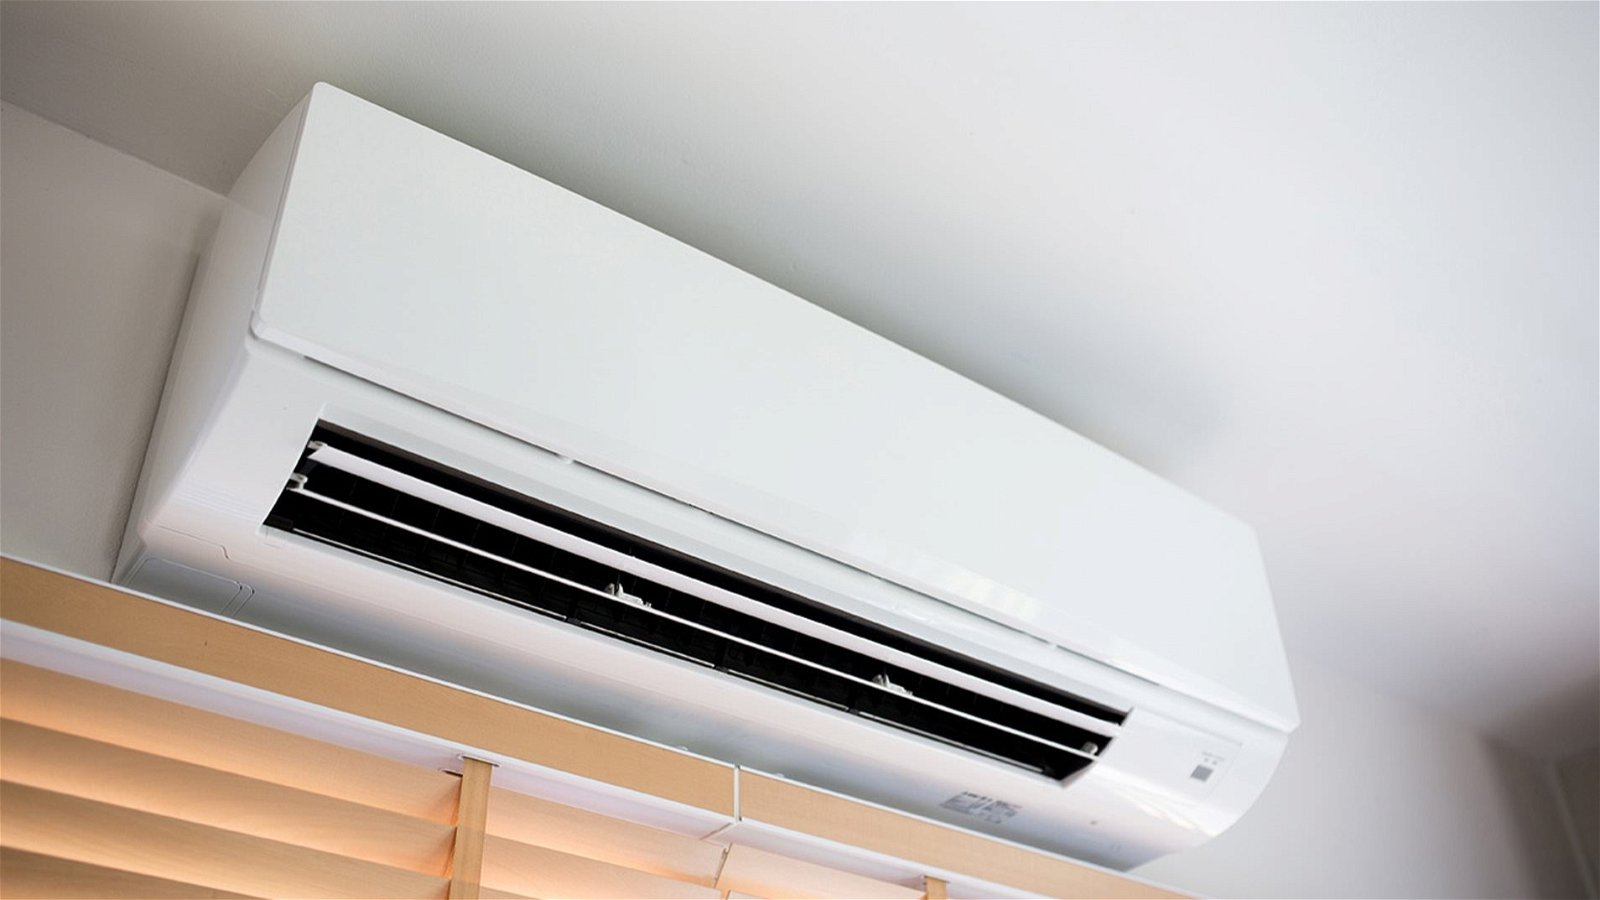 Instalar el aire acondicionado en casa: y todo lo que necesitas saber